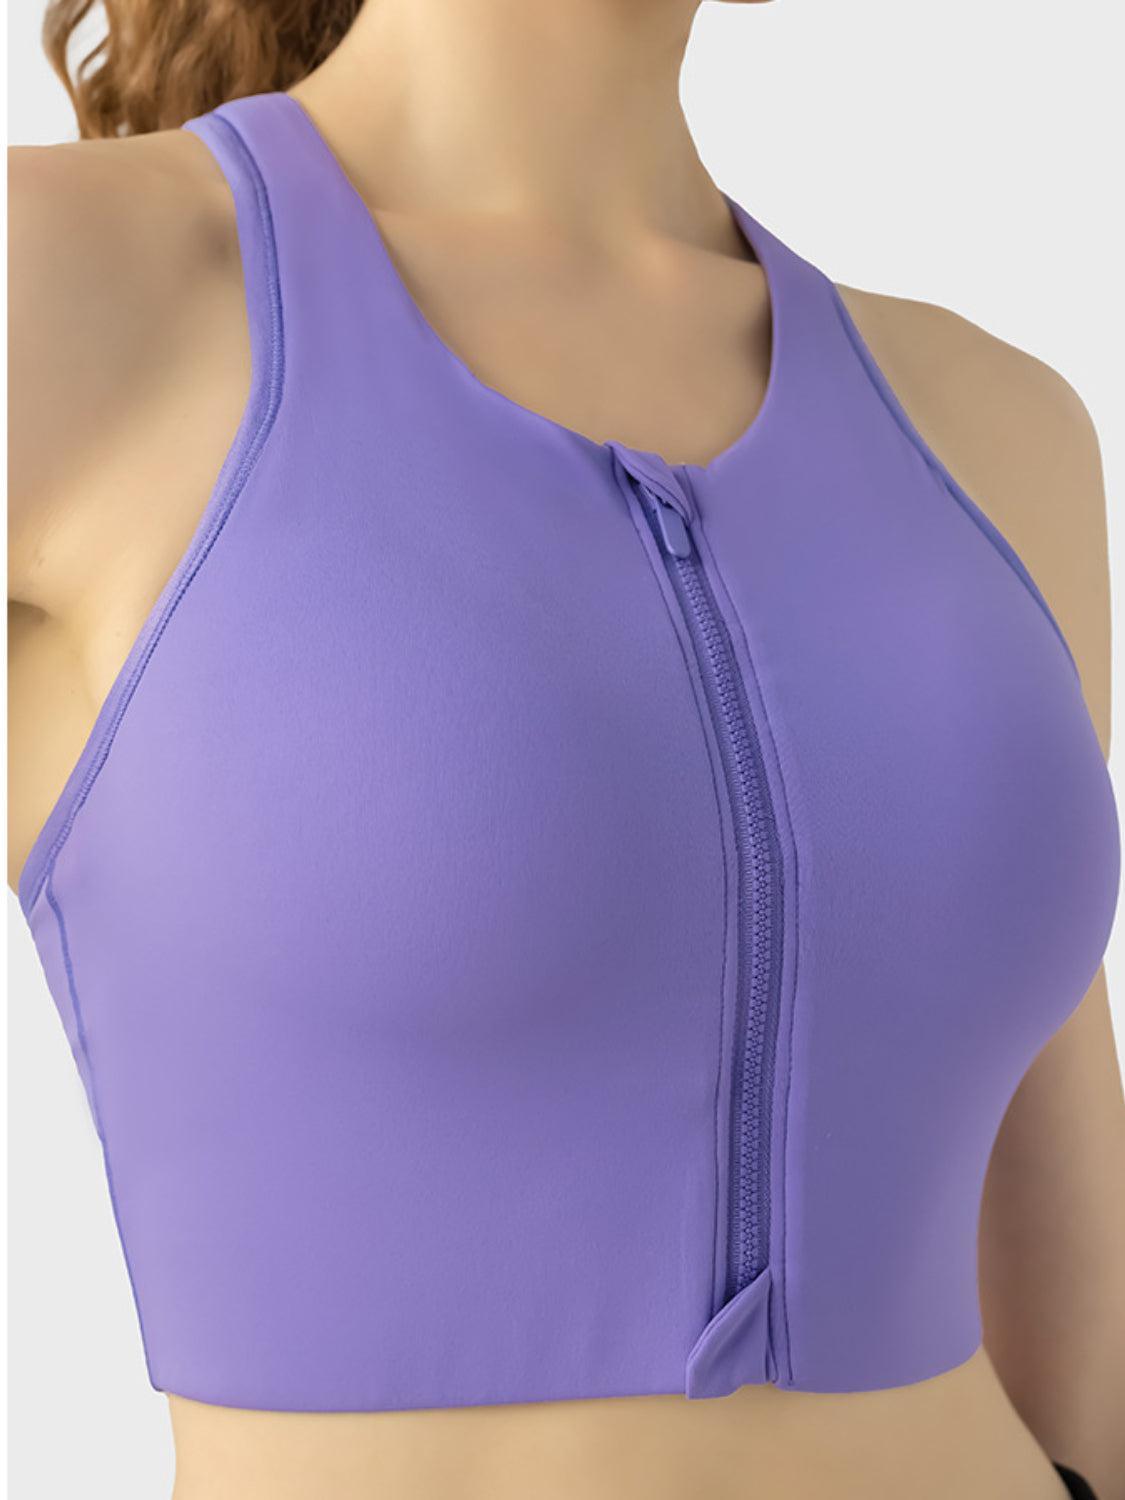 a woman wearing a purple sports bra top